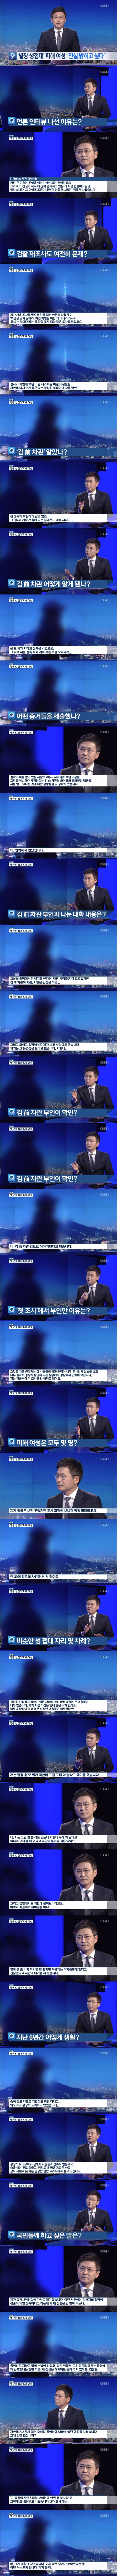 김학의 약물 강간 피해자 인터뷰 (KBS) | 인스티즈